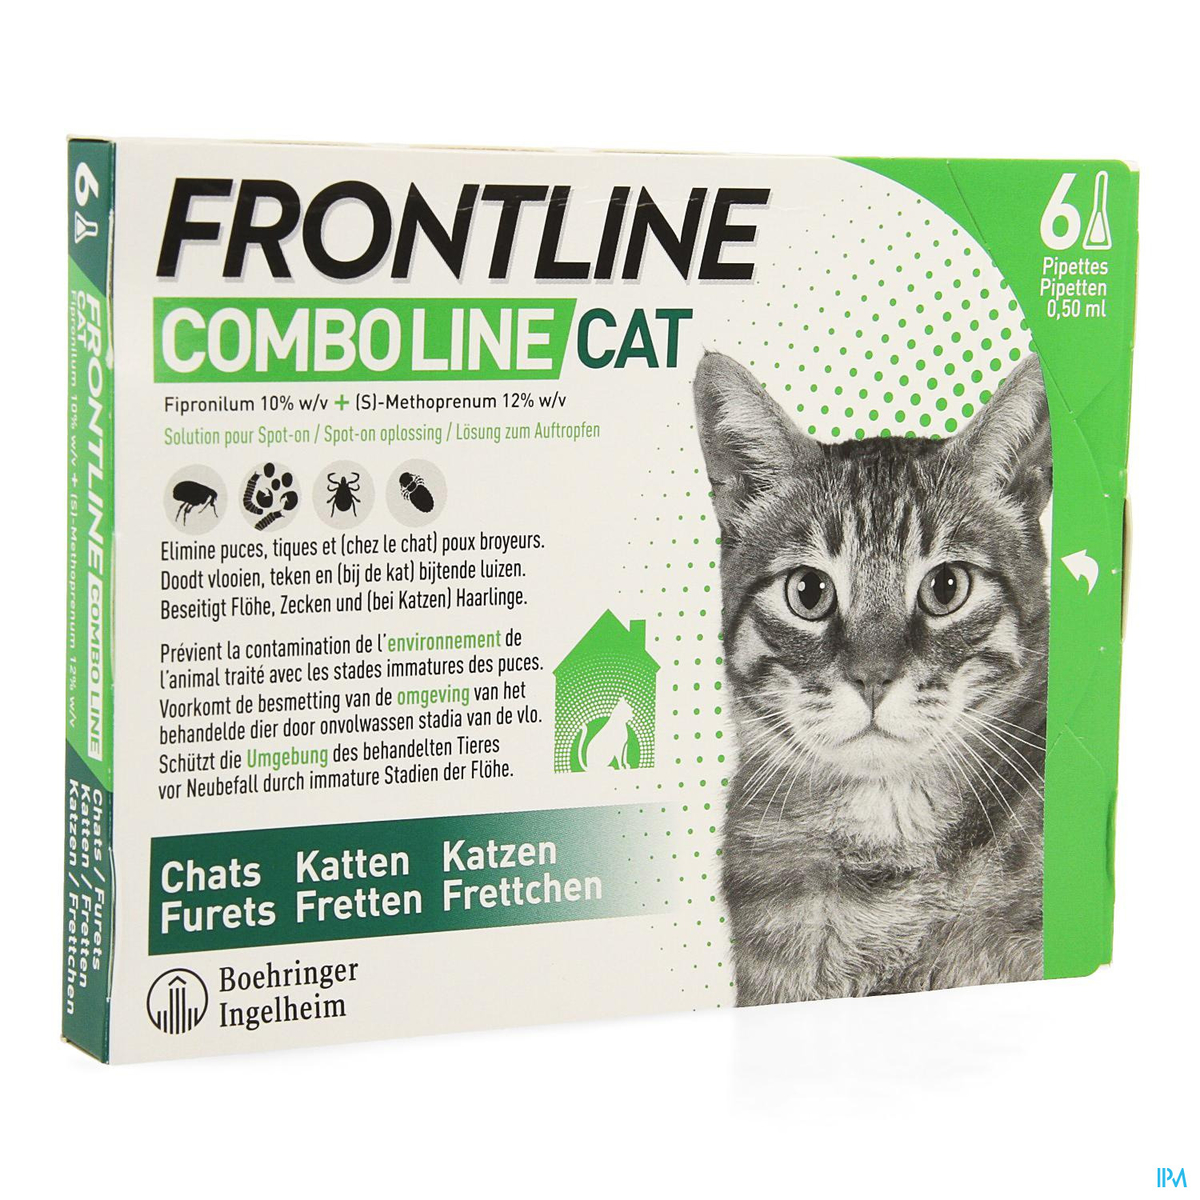 Reizende handelaar Tegen de wil prototype FRONTLINE Combo Line Cat 6P | Geneesmiddelen voor katten